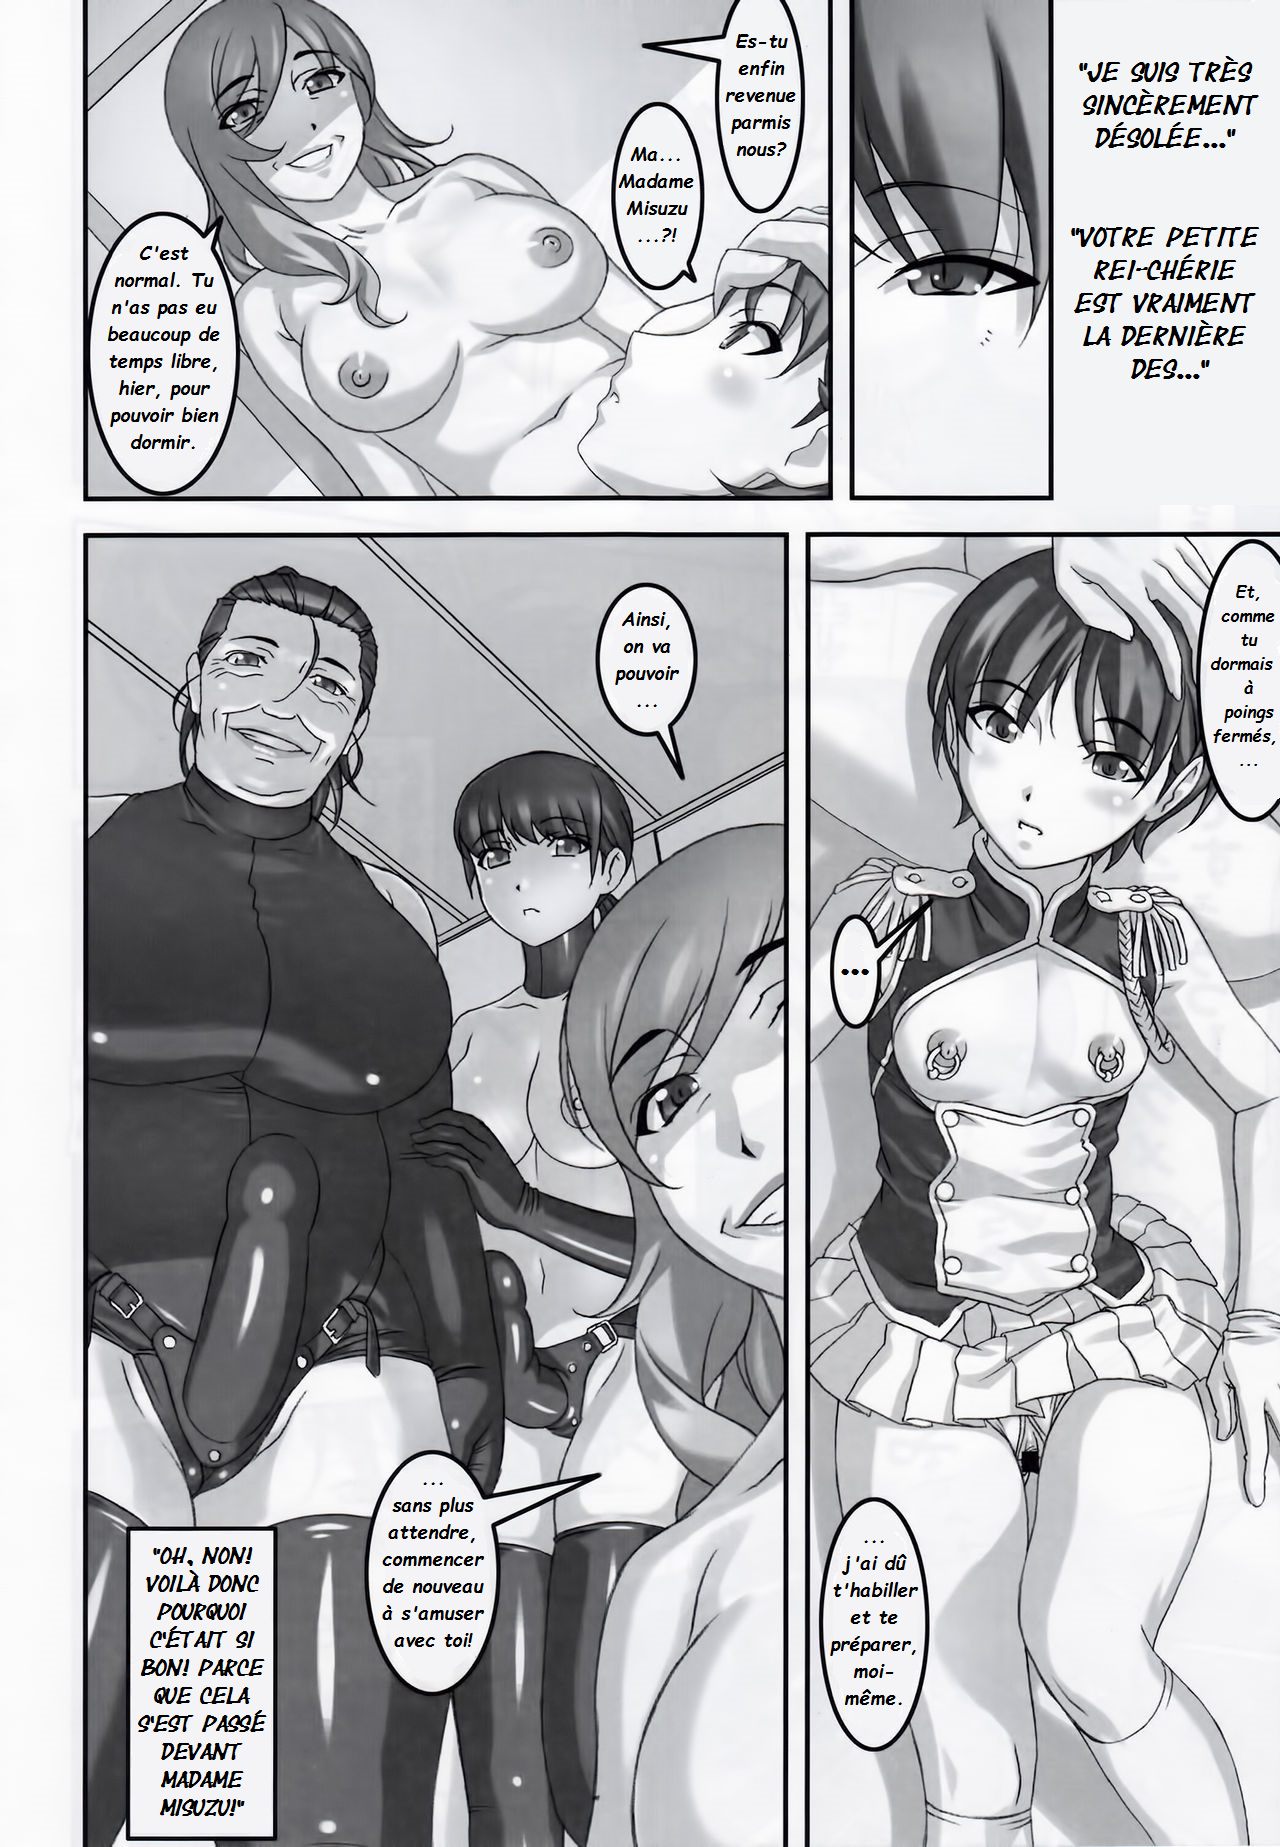 Anoko ga Natsuyasumi ni Ryokou saki de Oshiri no Ana o Kizetsu suru hodo Naburare Tsuzukeru Manga 2  La jeune Rei et sa nounou Misuzu. Volume 3 numero d'image 15